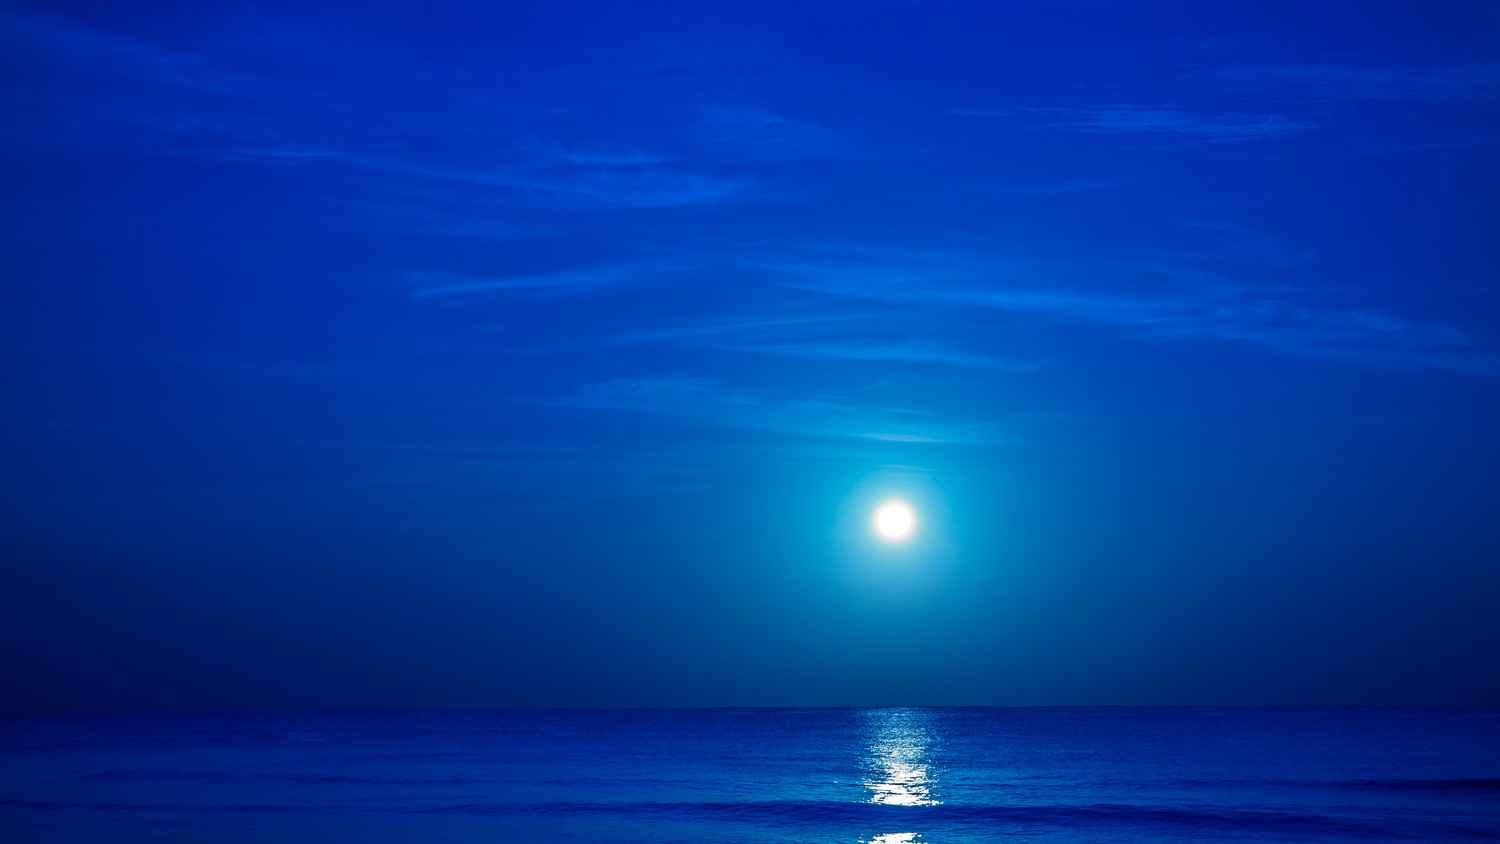 The beautiful moonlight reflecting off of the ocean near the Playa Del Carmen beach.